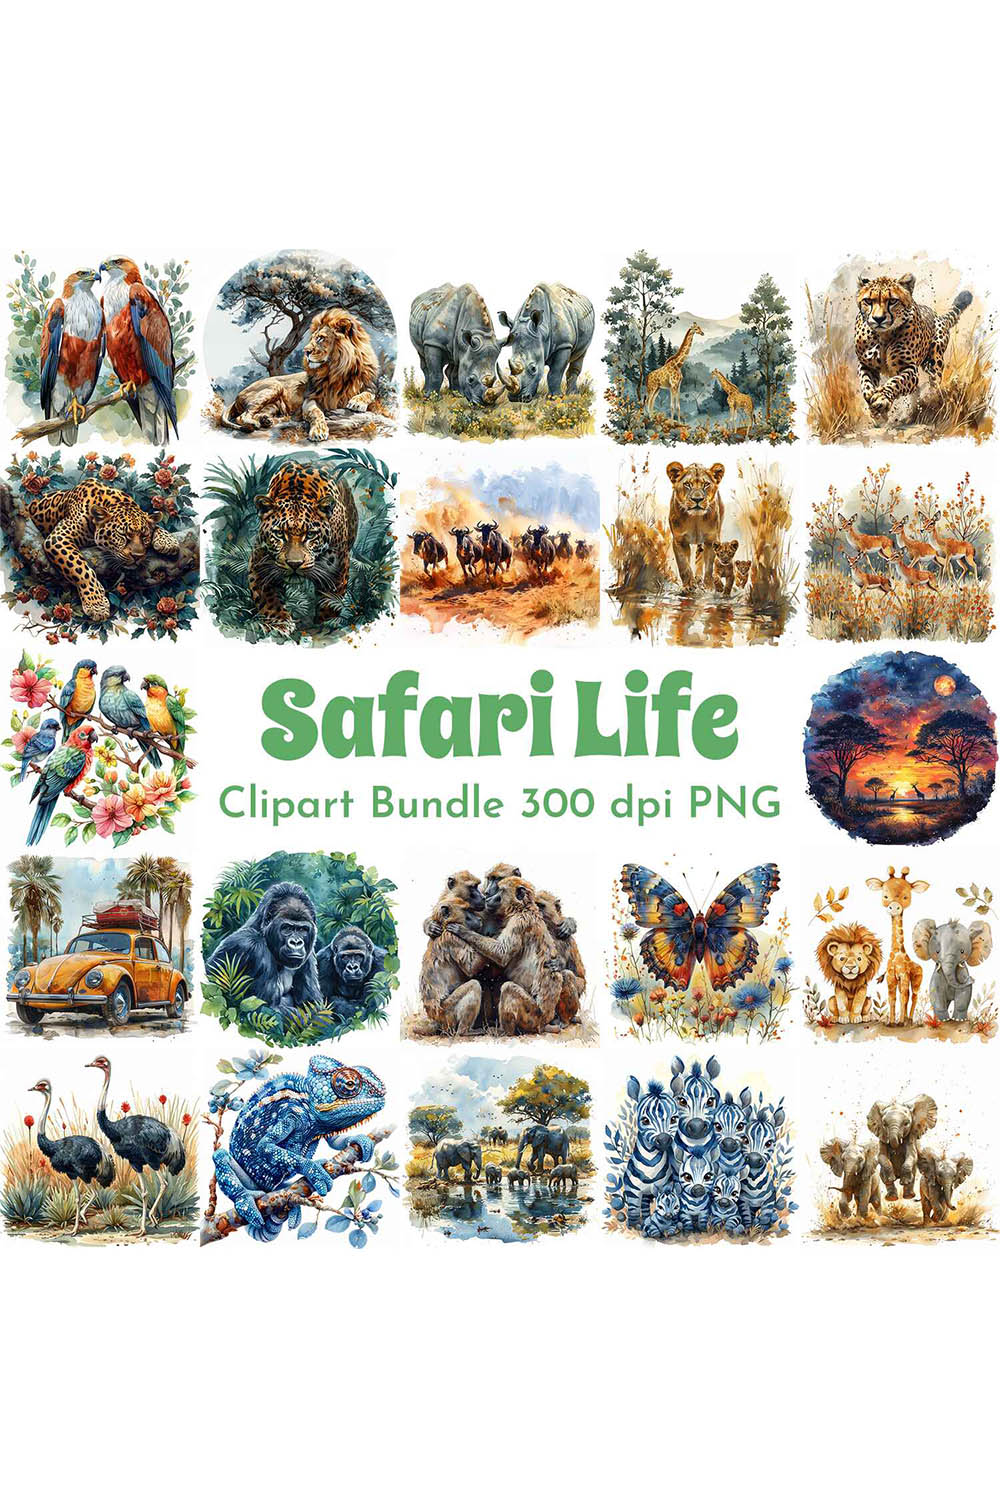 Safari Life Clipart Bundle pinterest preview image.